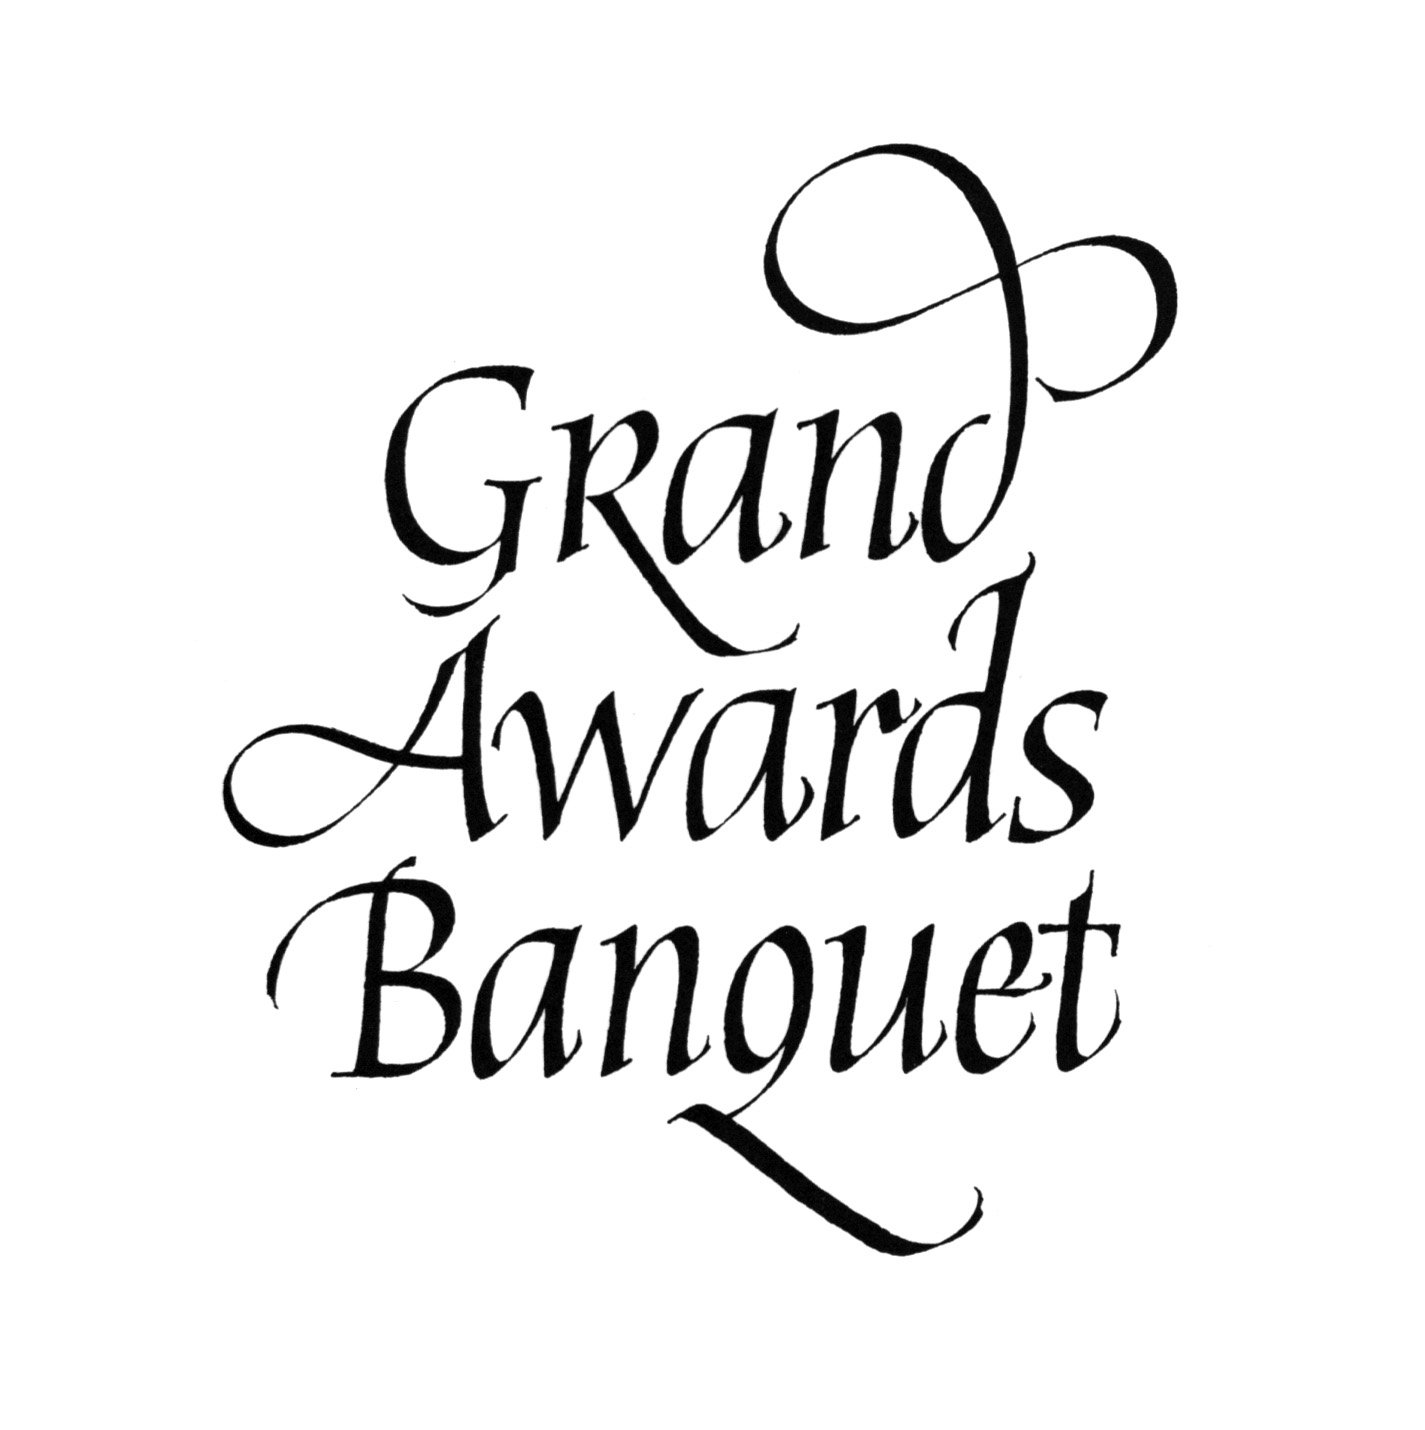 Grand awards banquet.jpg